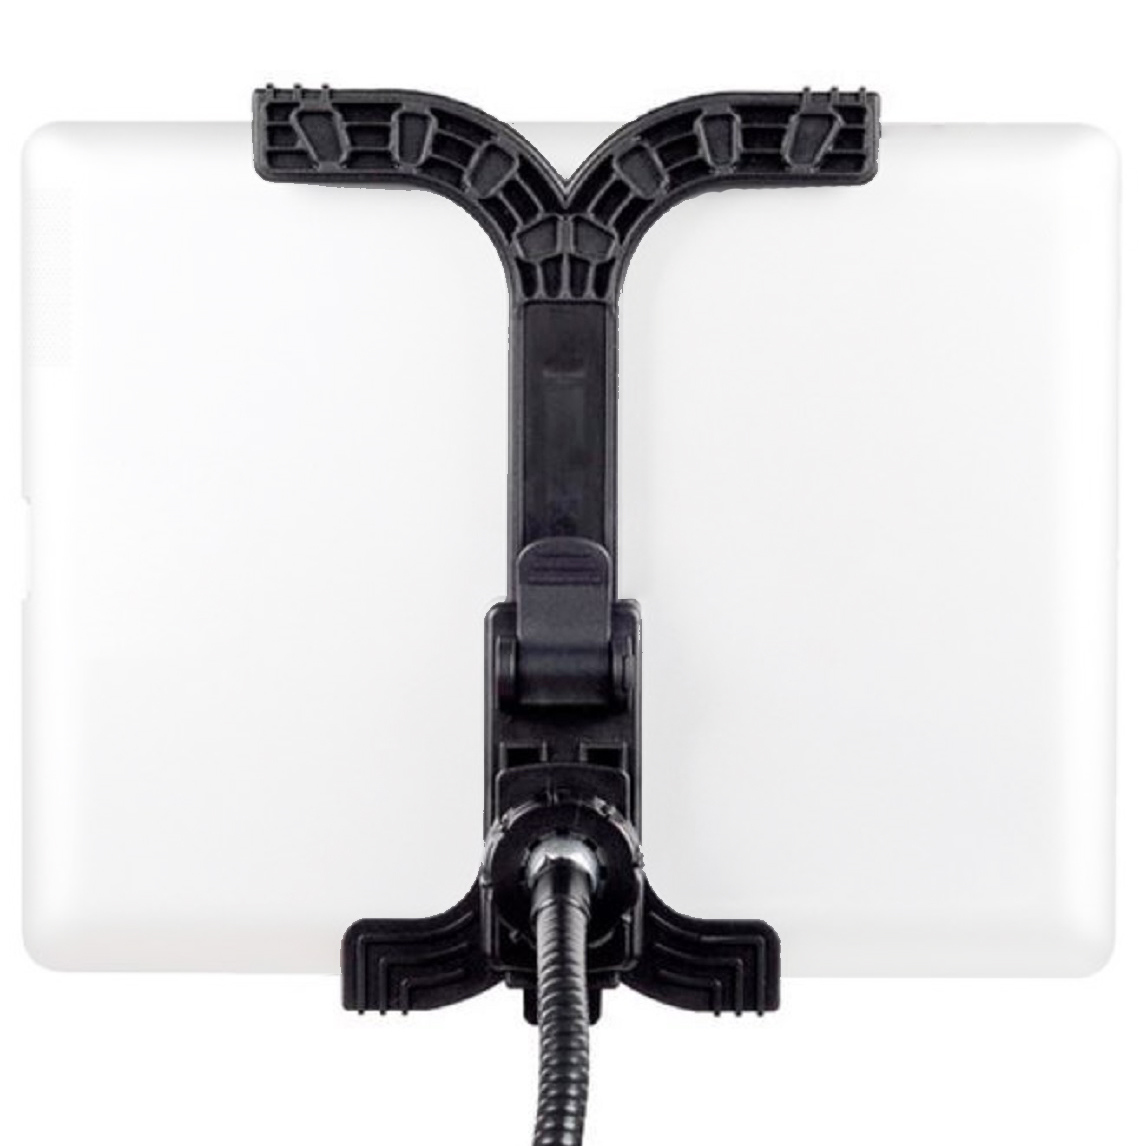 Soporto flexible BRESSER de cuello de cisne BRESSER BR-145 para tabletas y teléfonos